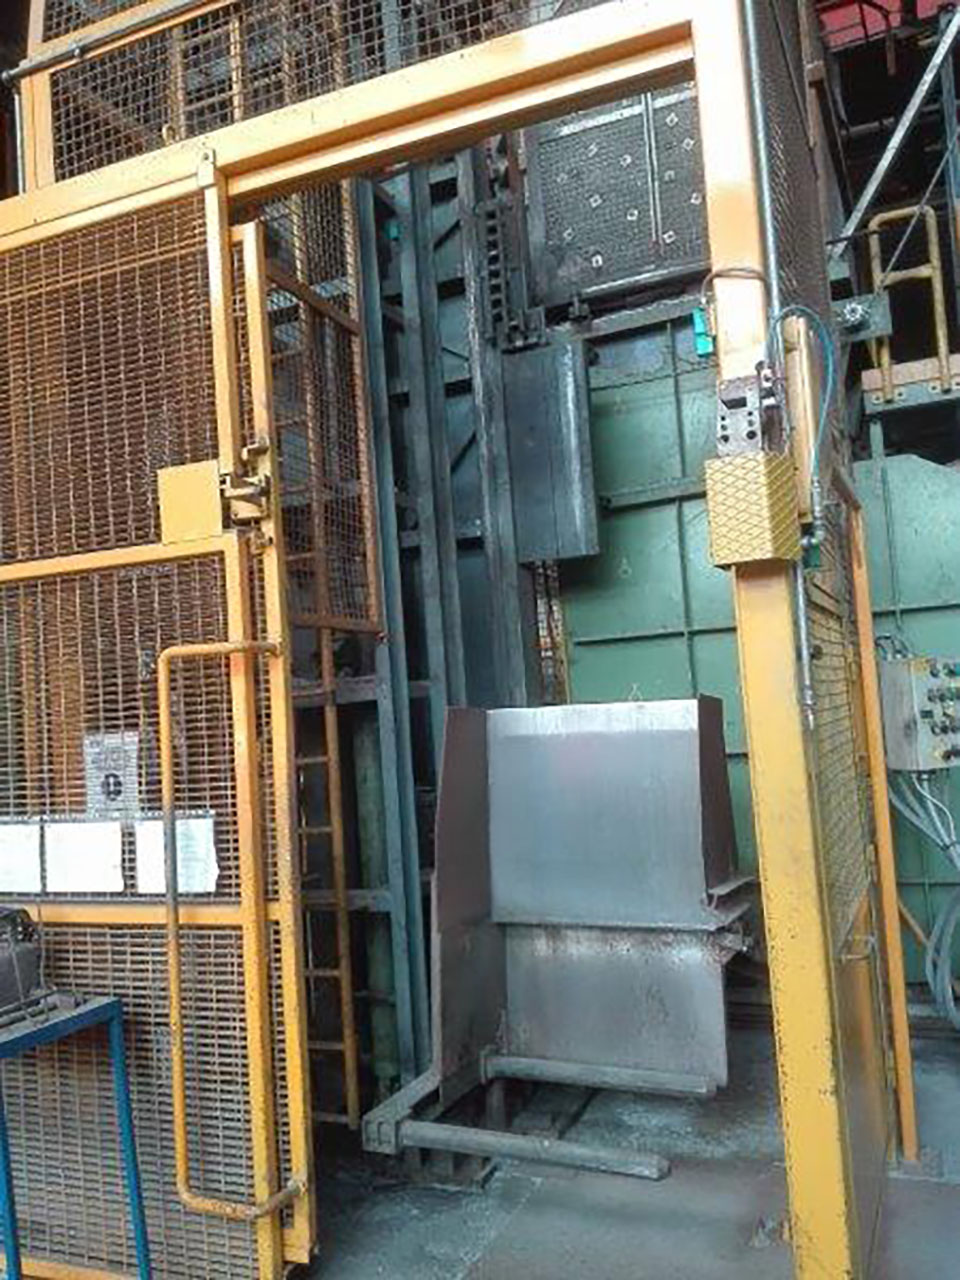 StrikoWestofen WHS-T8000/4000 G-EG aluminium melting furnace O1631, used